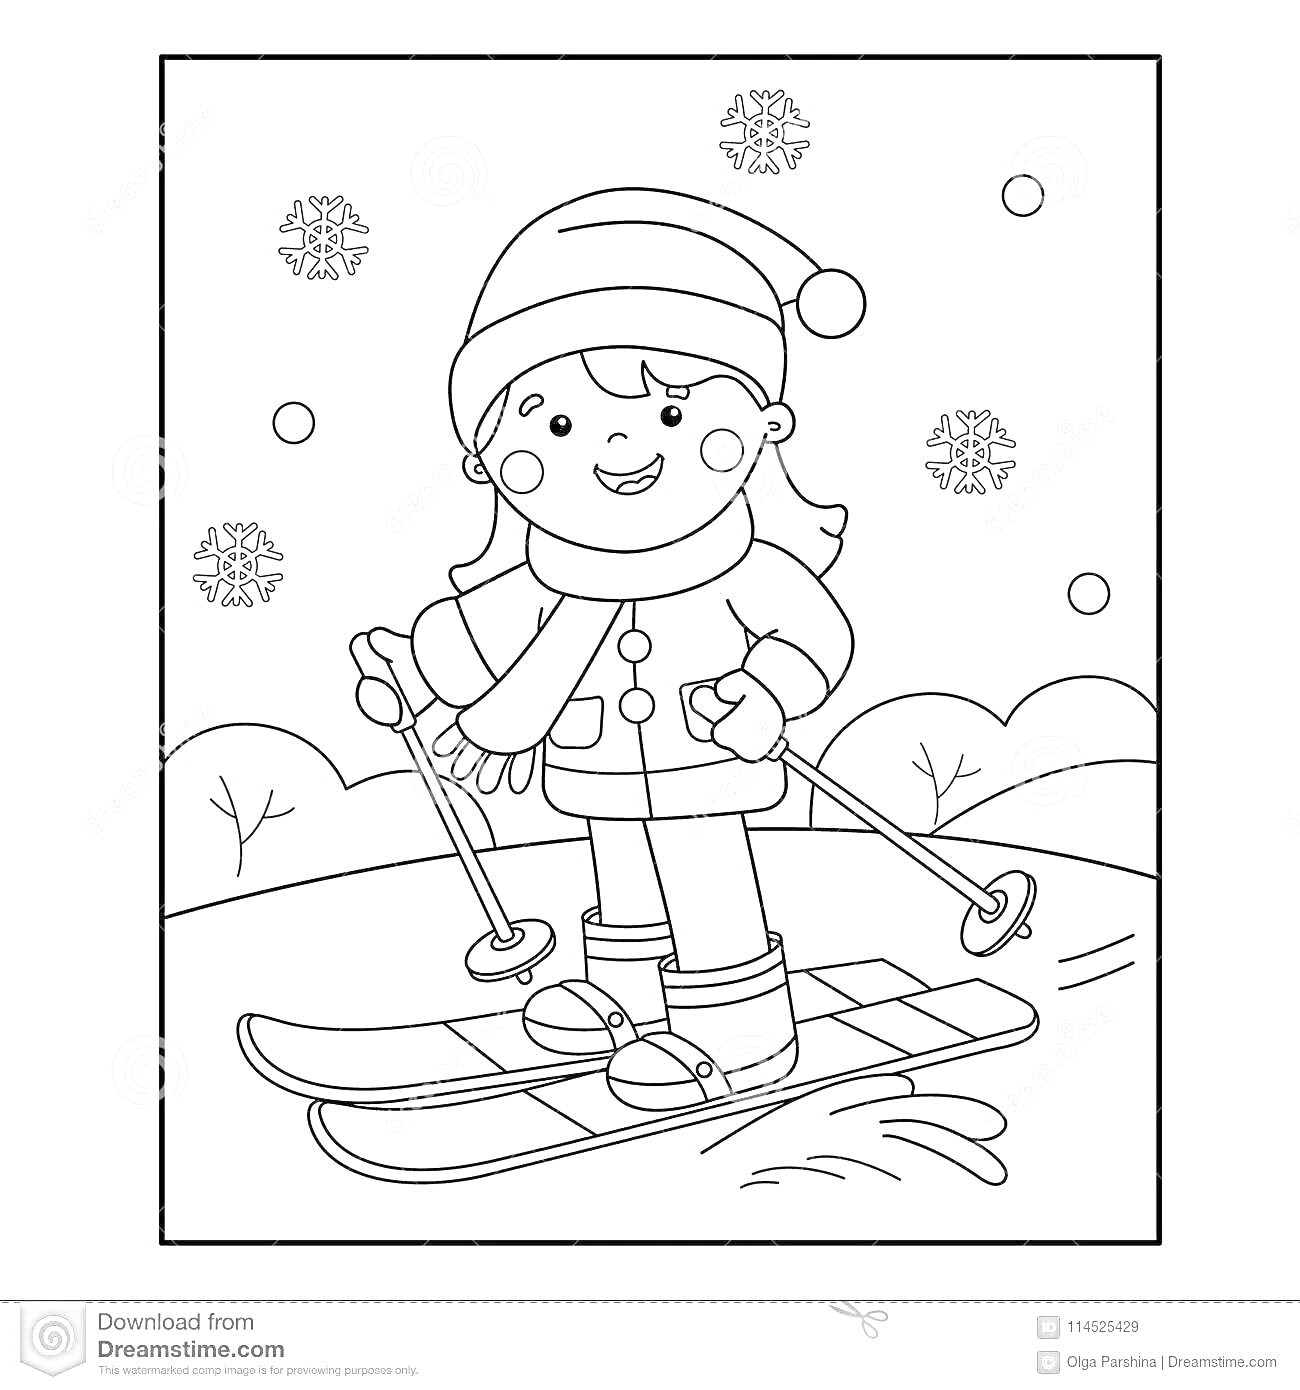 На раскраске изображено: Девочка, Лыжи, Лыжные палки, Зима, Снег, Снежинки, Зимние виды спорта, Горка, Куртка, Шапка, Ботинки